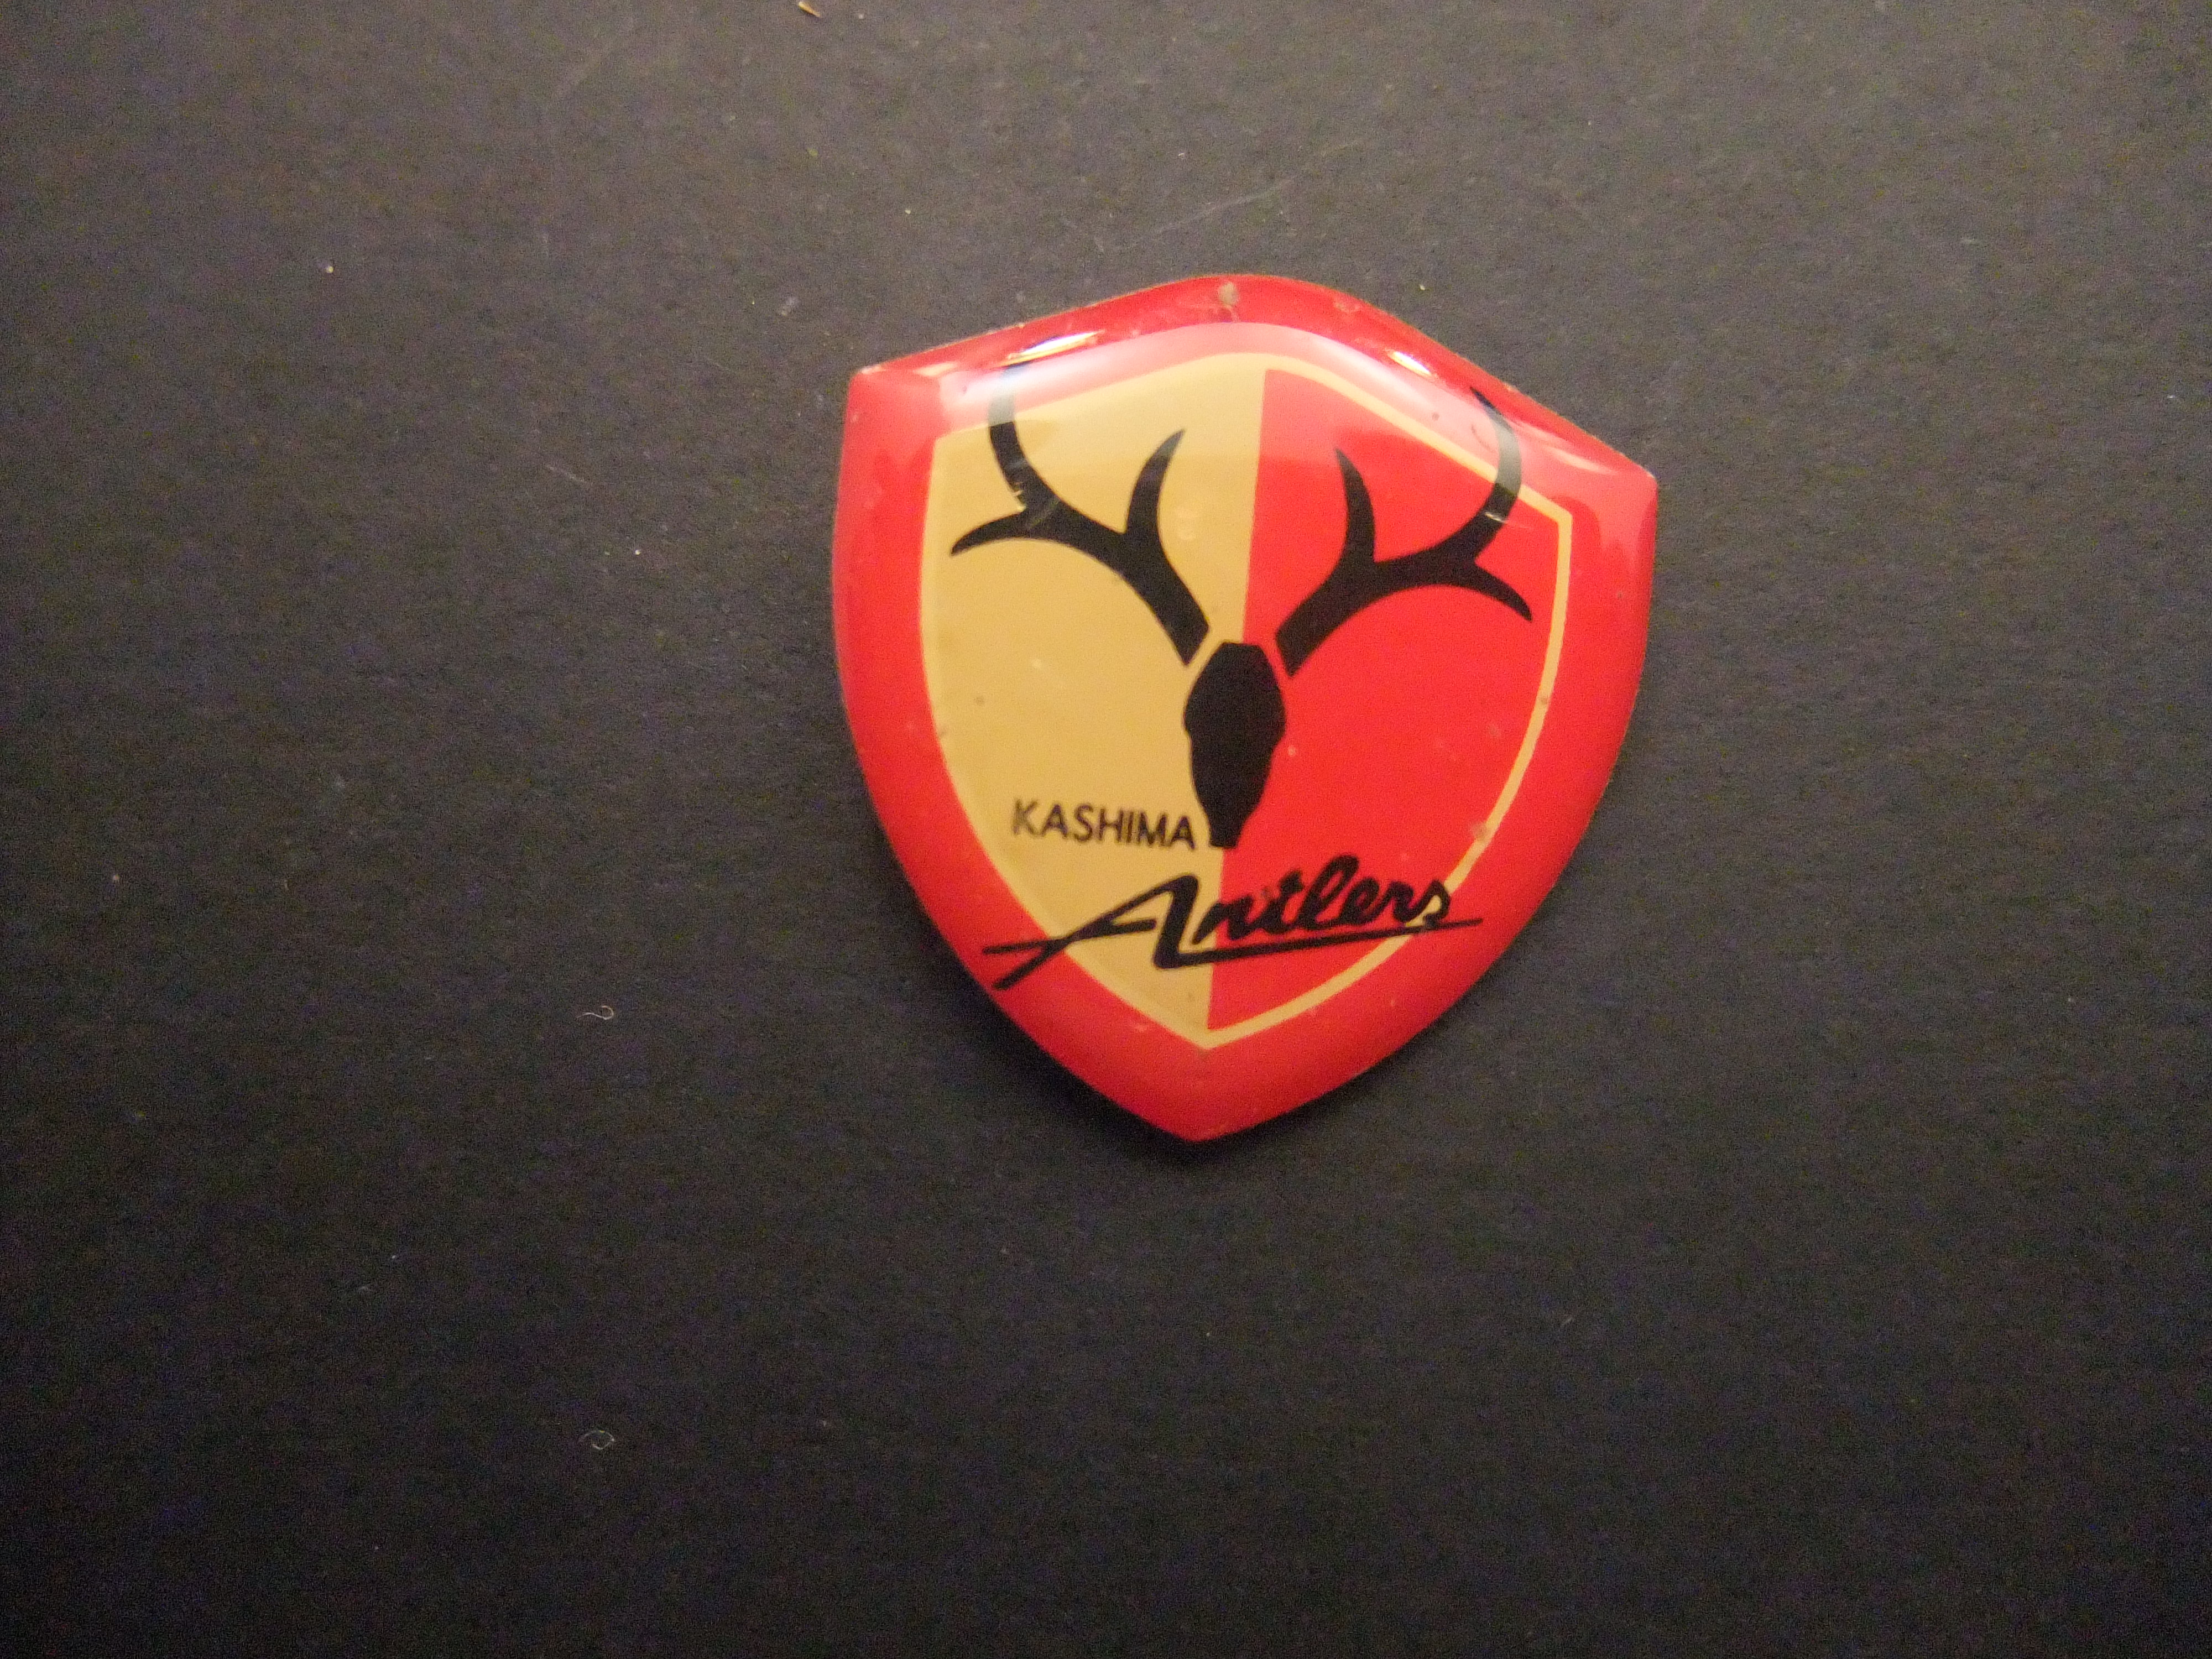 Kashima Antlers Japanse voetbalclub, logo